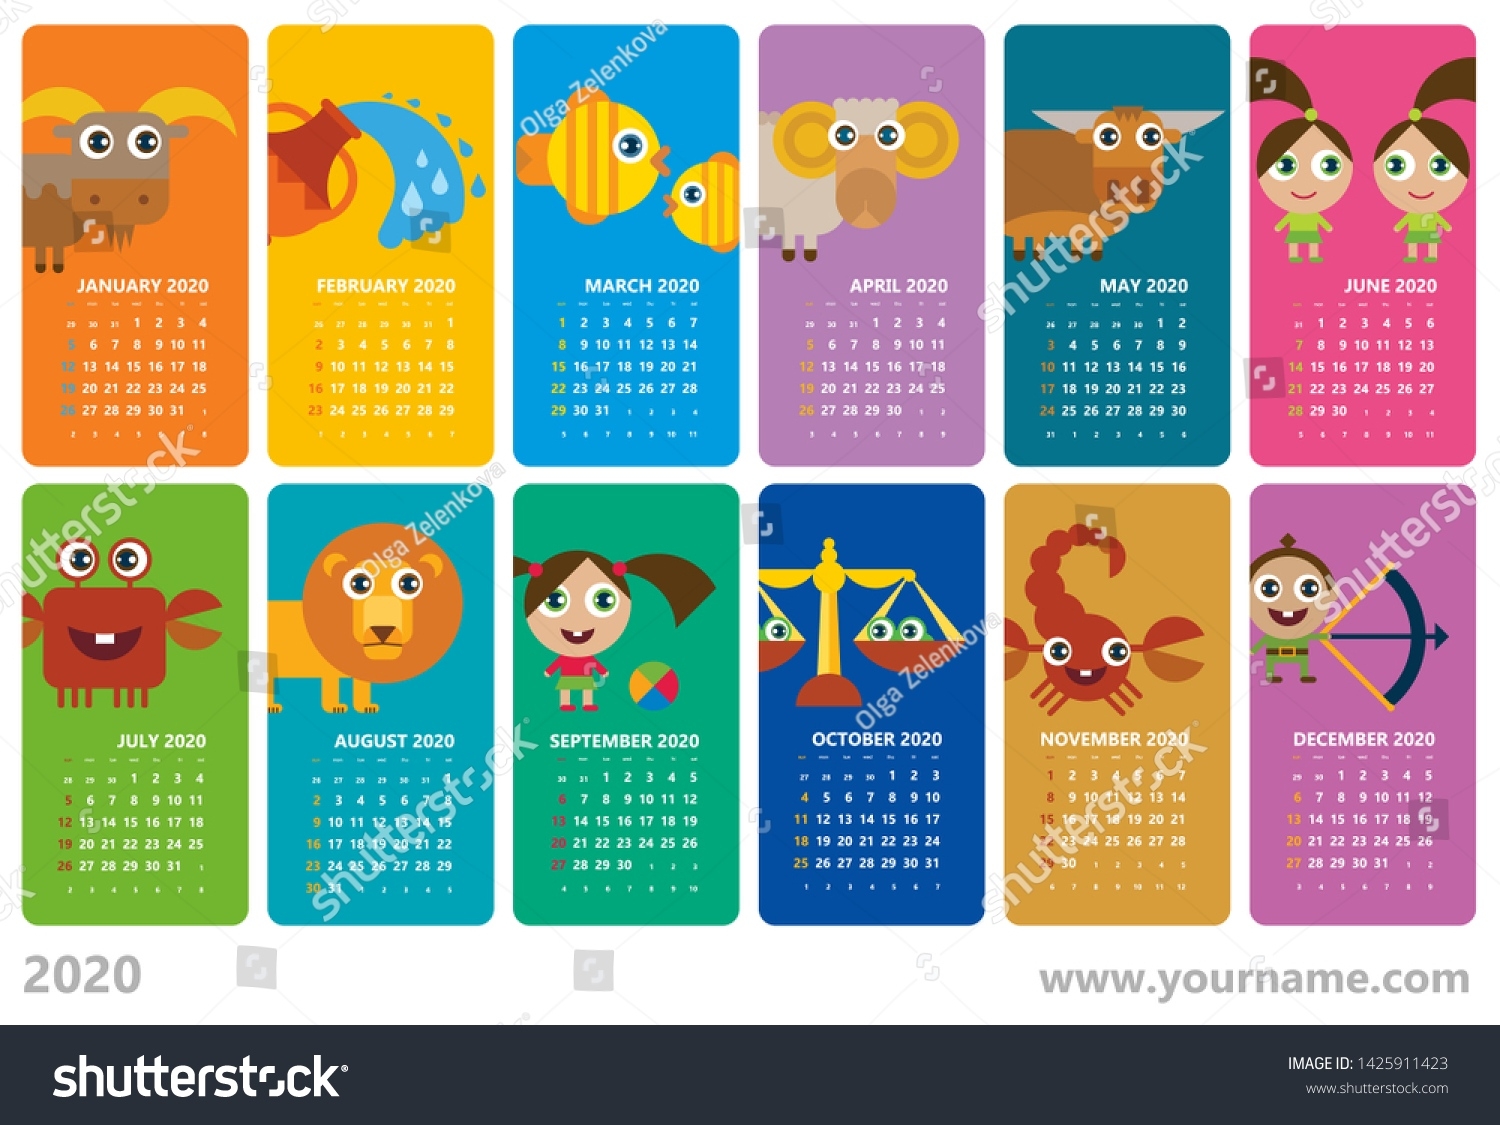 Creative Calendar 2020 Horoscope Signs Zodiac Stock Vector Calendar Of The Zodiac Signs